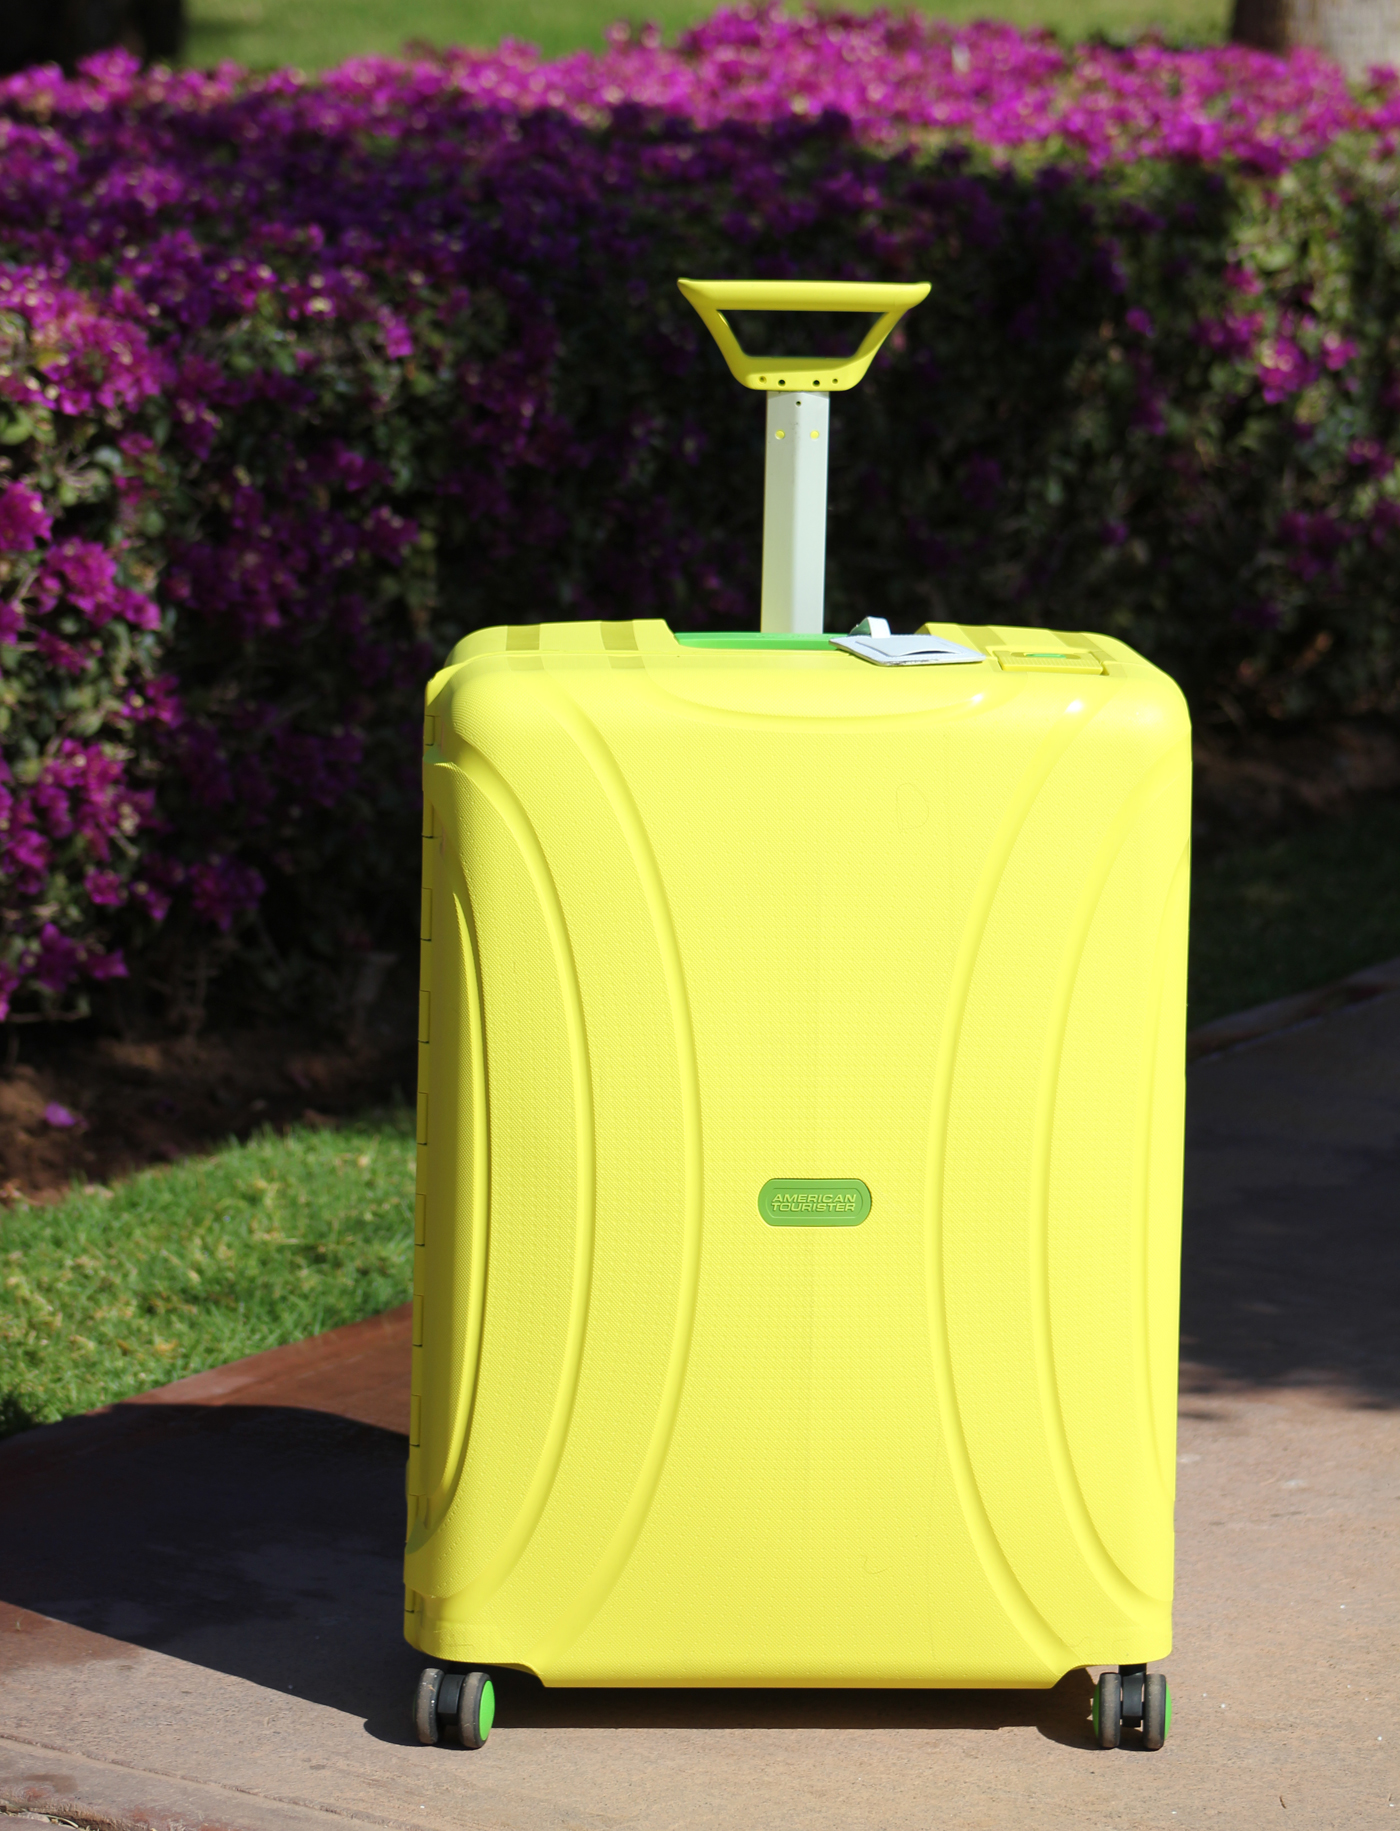 Stylish travel luggage